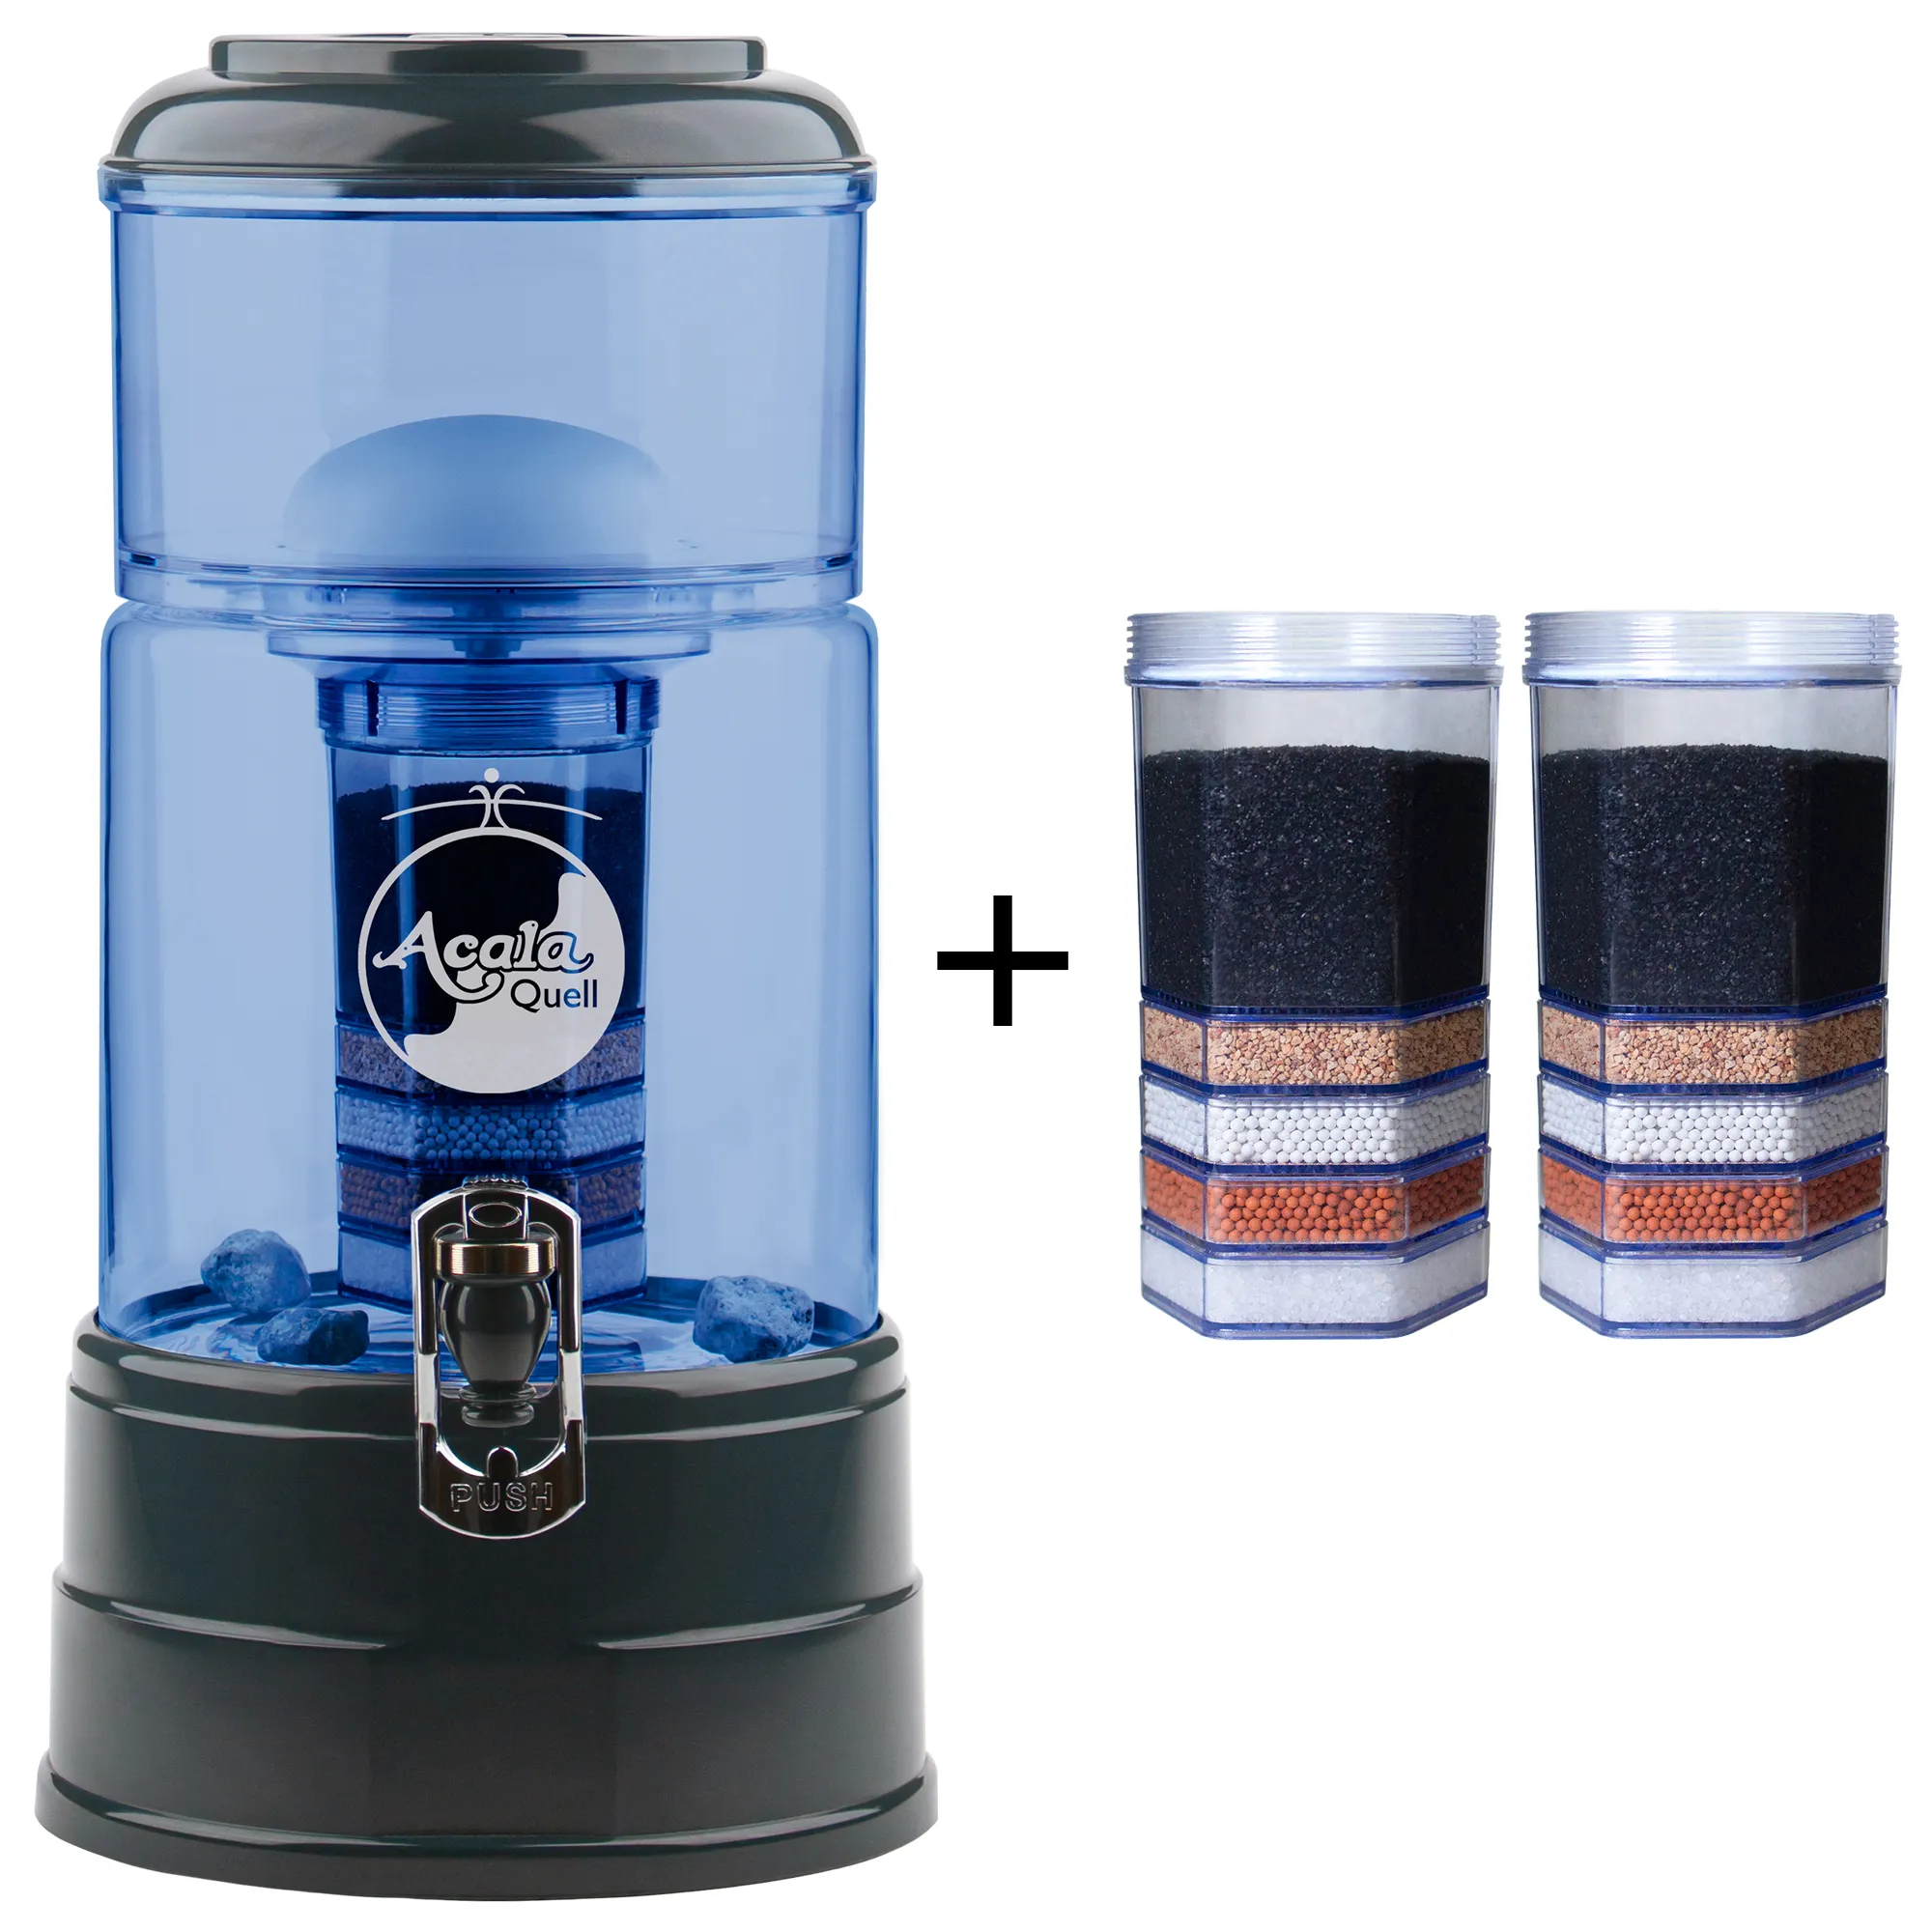 Zu sehen ist der Acala Wasserfilter Mini in blau-anthrazit inklusive einer Filterkartusche und einem Keramikfilter. Zusätzlich sieht man zwei Filterkartuschen. Das Bild zeigt das Einsteigerpaket für ein Jahr.